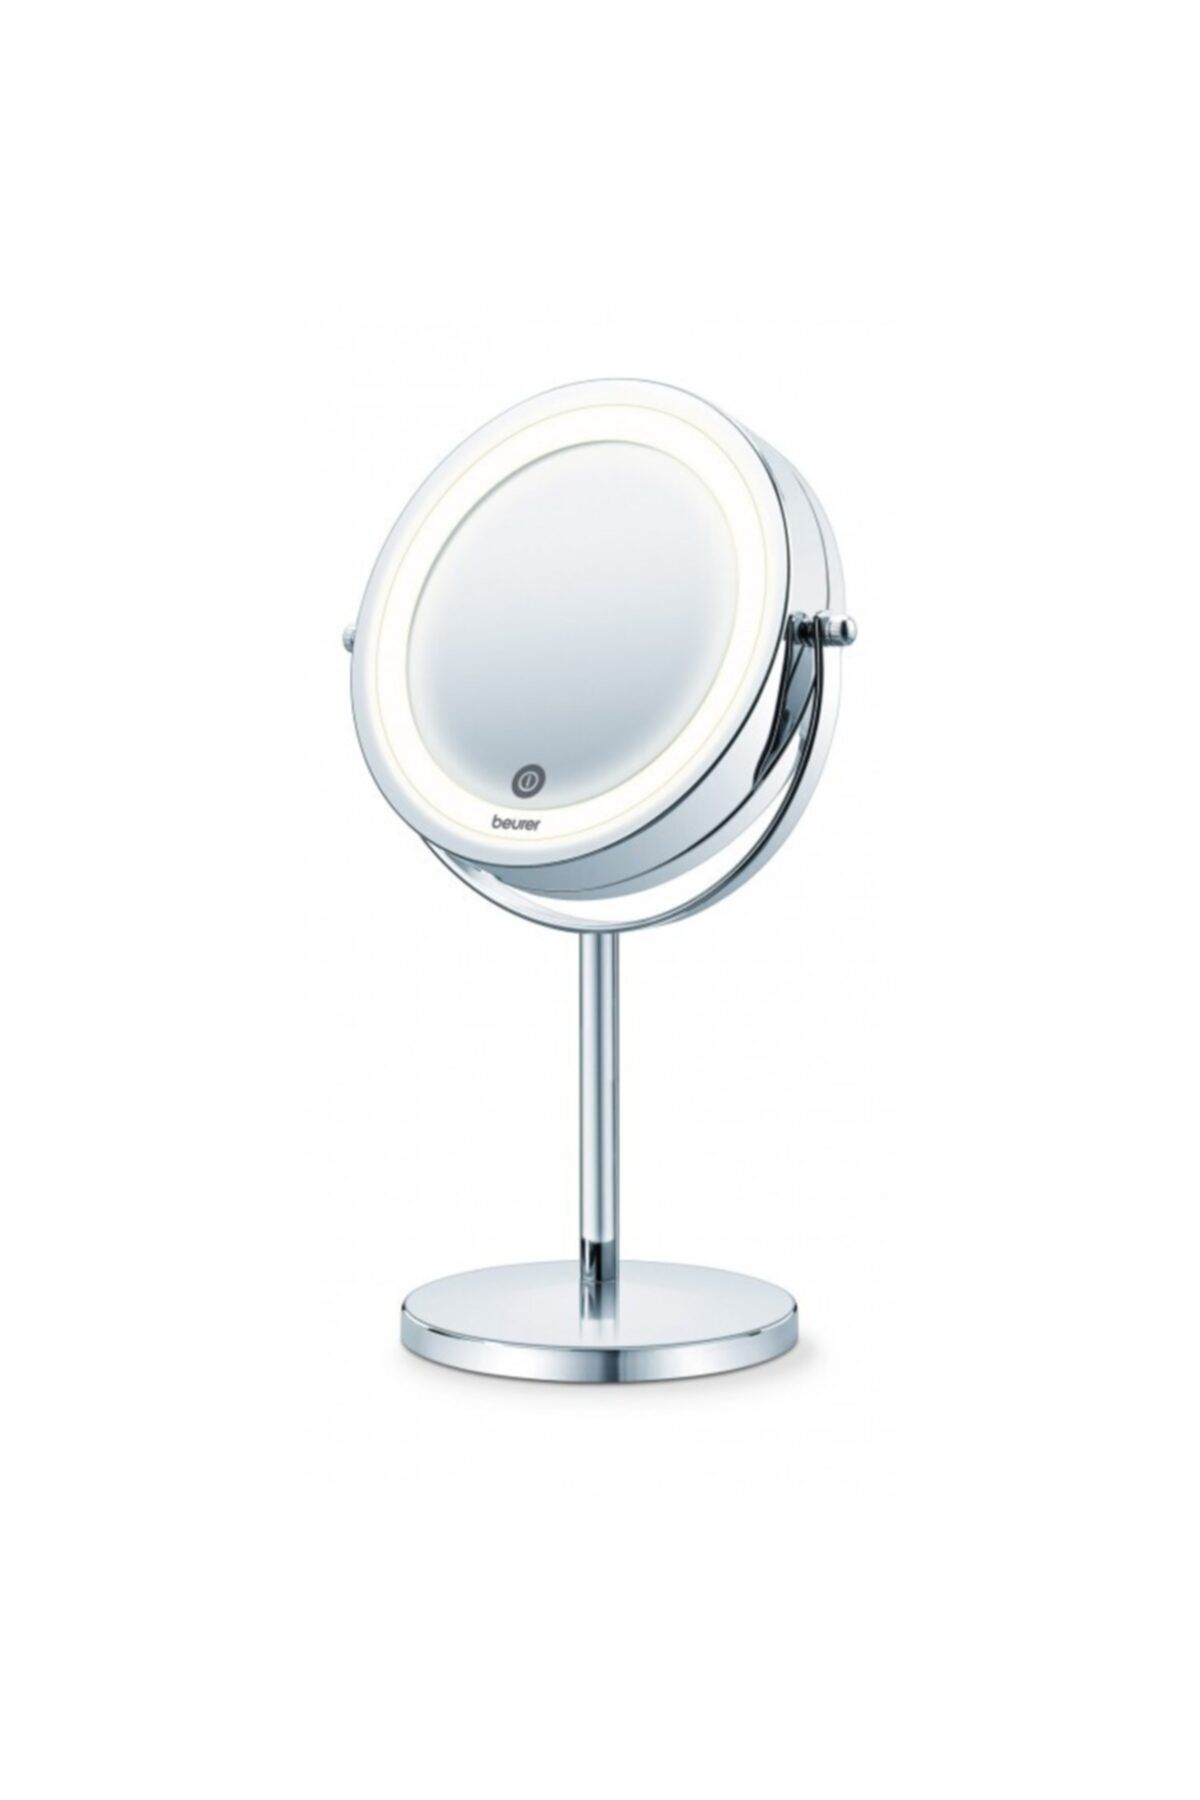 Beurer Bs 55 Işıklı Makyaj Aynası 7 Kat Büyütme